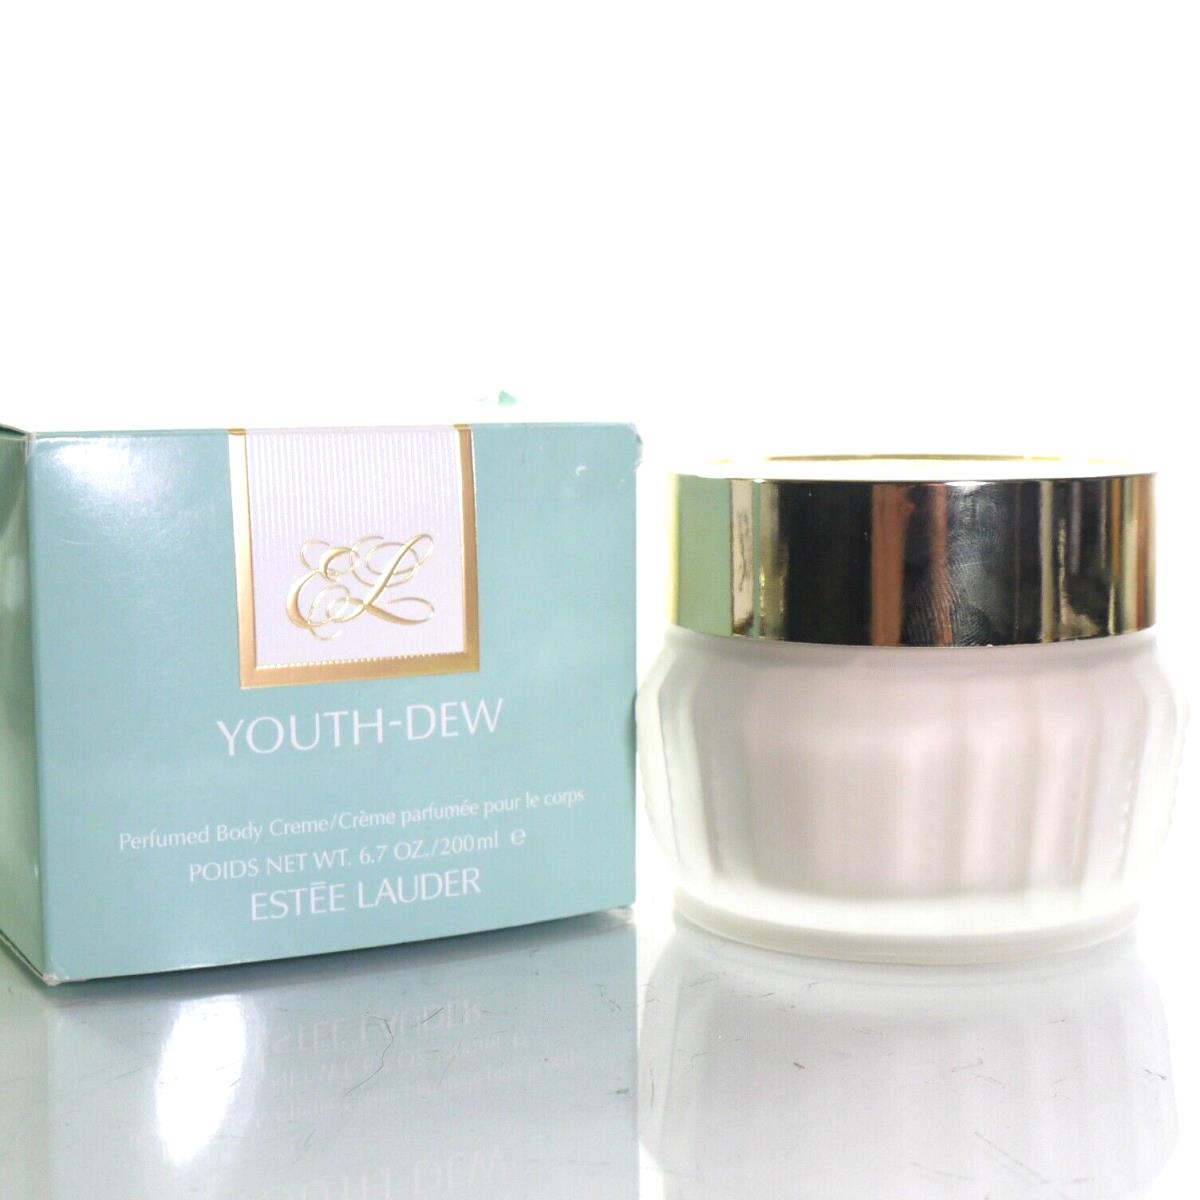 Estee Lauder Youth-dew Perfumed Body Cream 6.7OZ Glass Jar